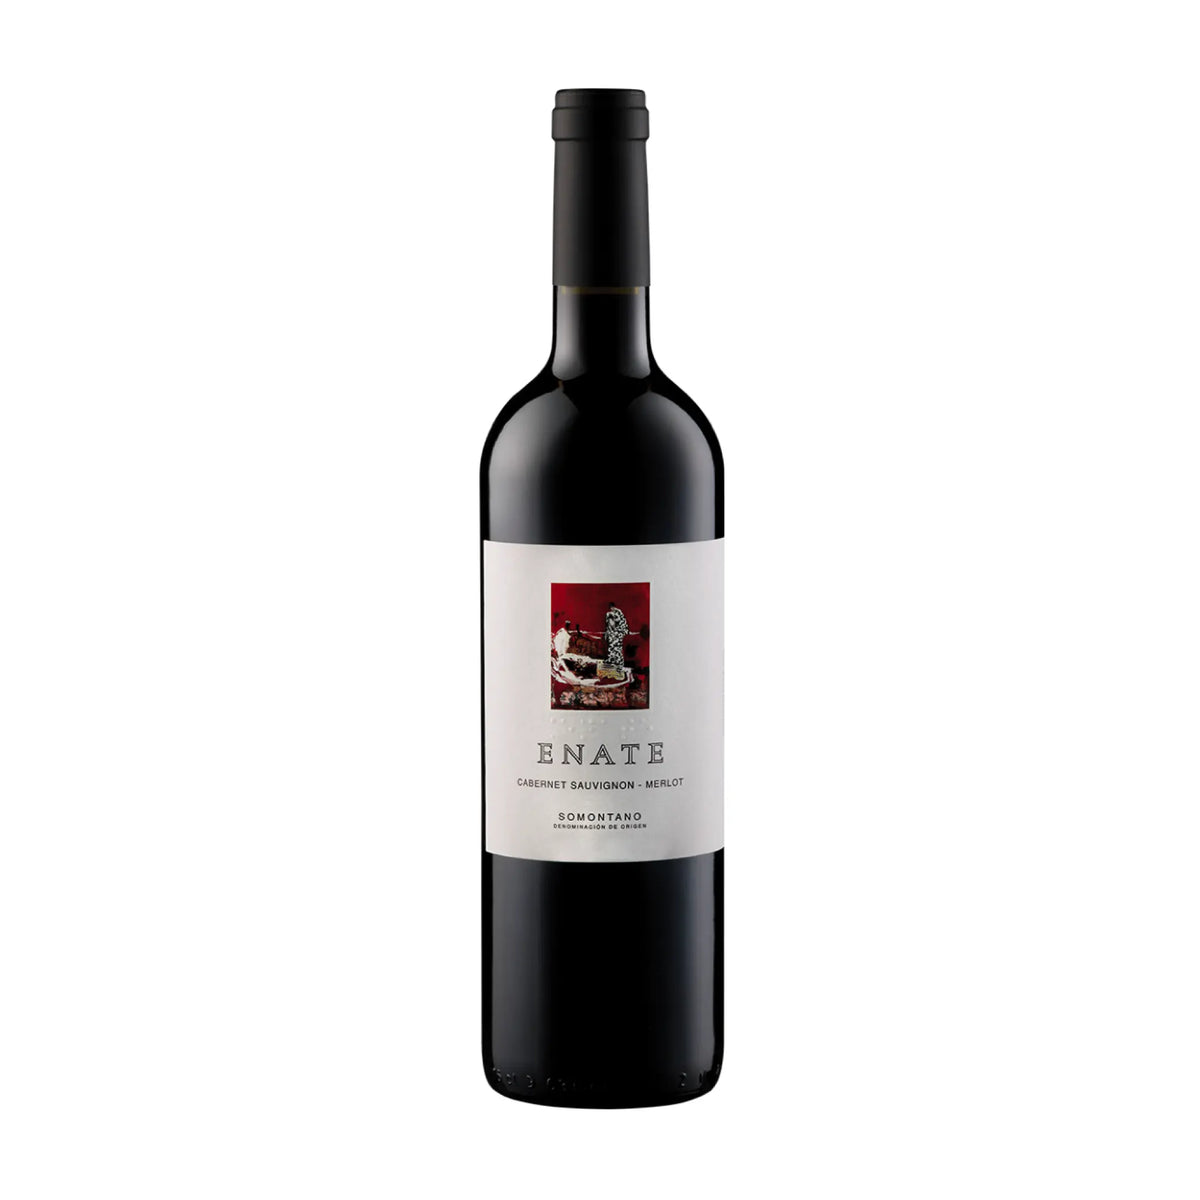 Enate-Rotwein-Cuvée-Spanien-Aragonien-2020 Enate Cabernet Sauvignon - Merlot DO-WINECOM